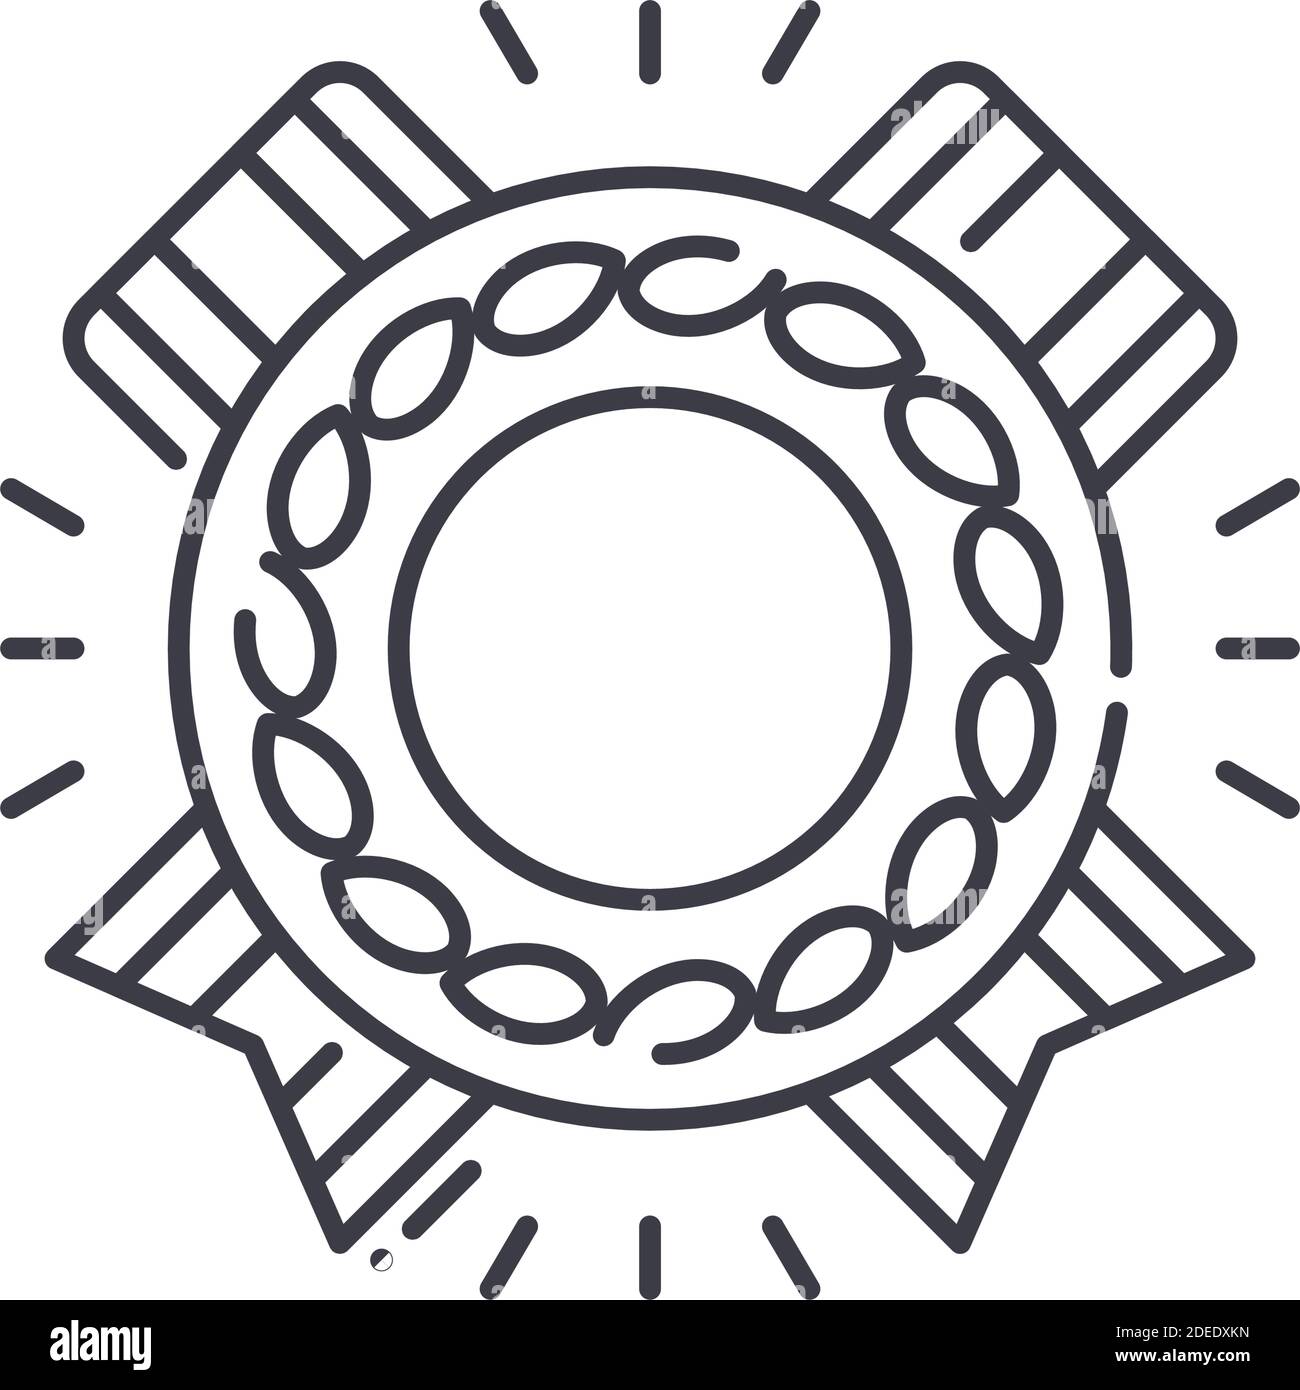 Icona della medaglia d'oro, illustrazione isolata lineare, vettore di linea sottile, segno di disegno di fotoricettore, simbolo di concetto di contorno con tratto modificabile su sfondo bianco. Illustrazione Vettoriale